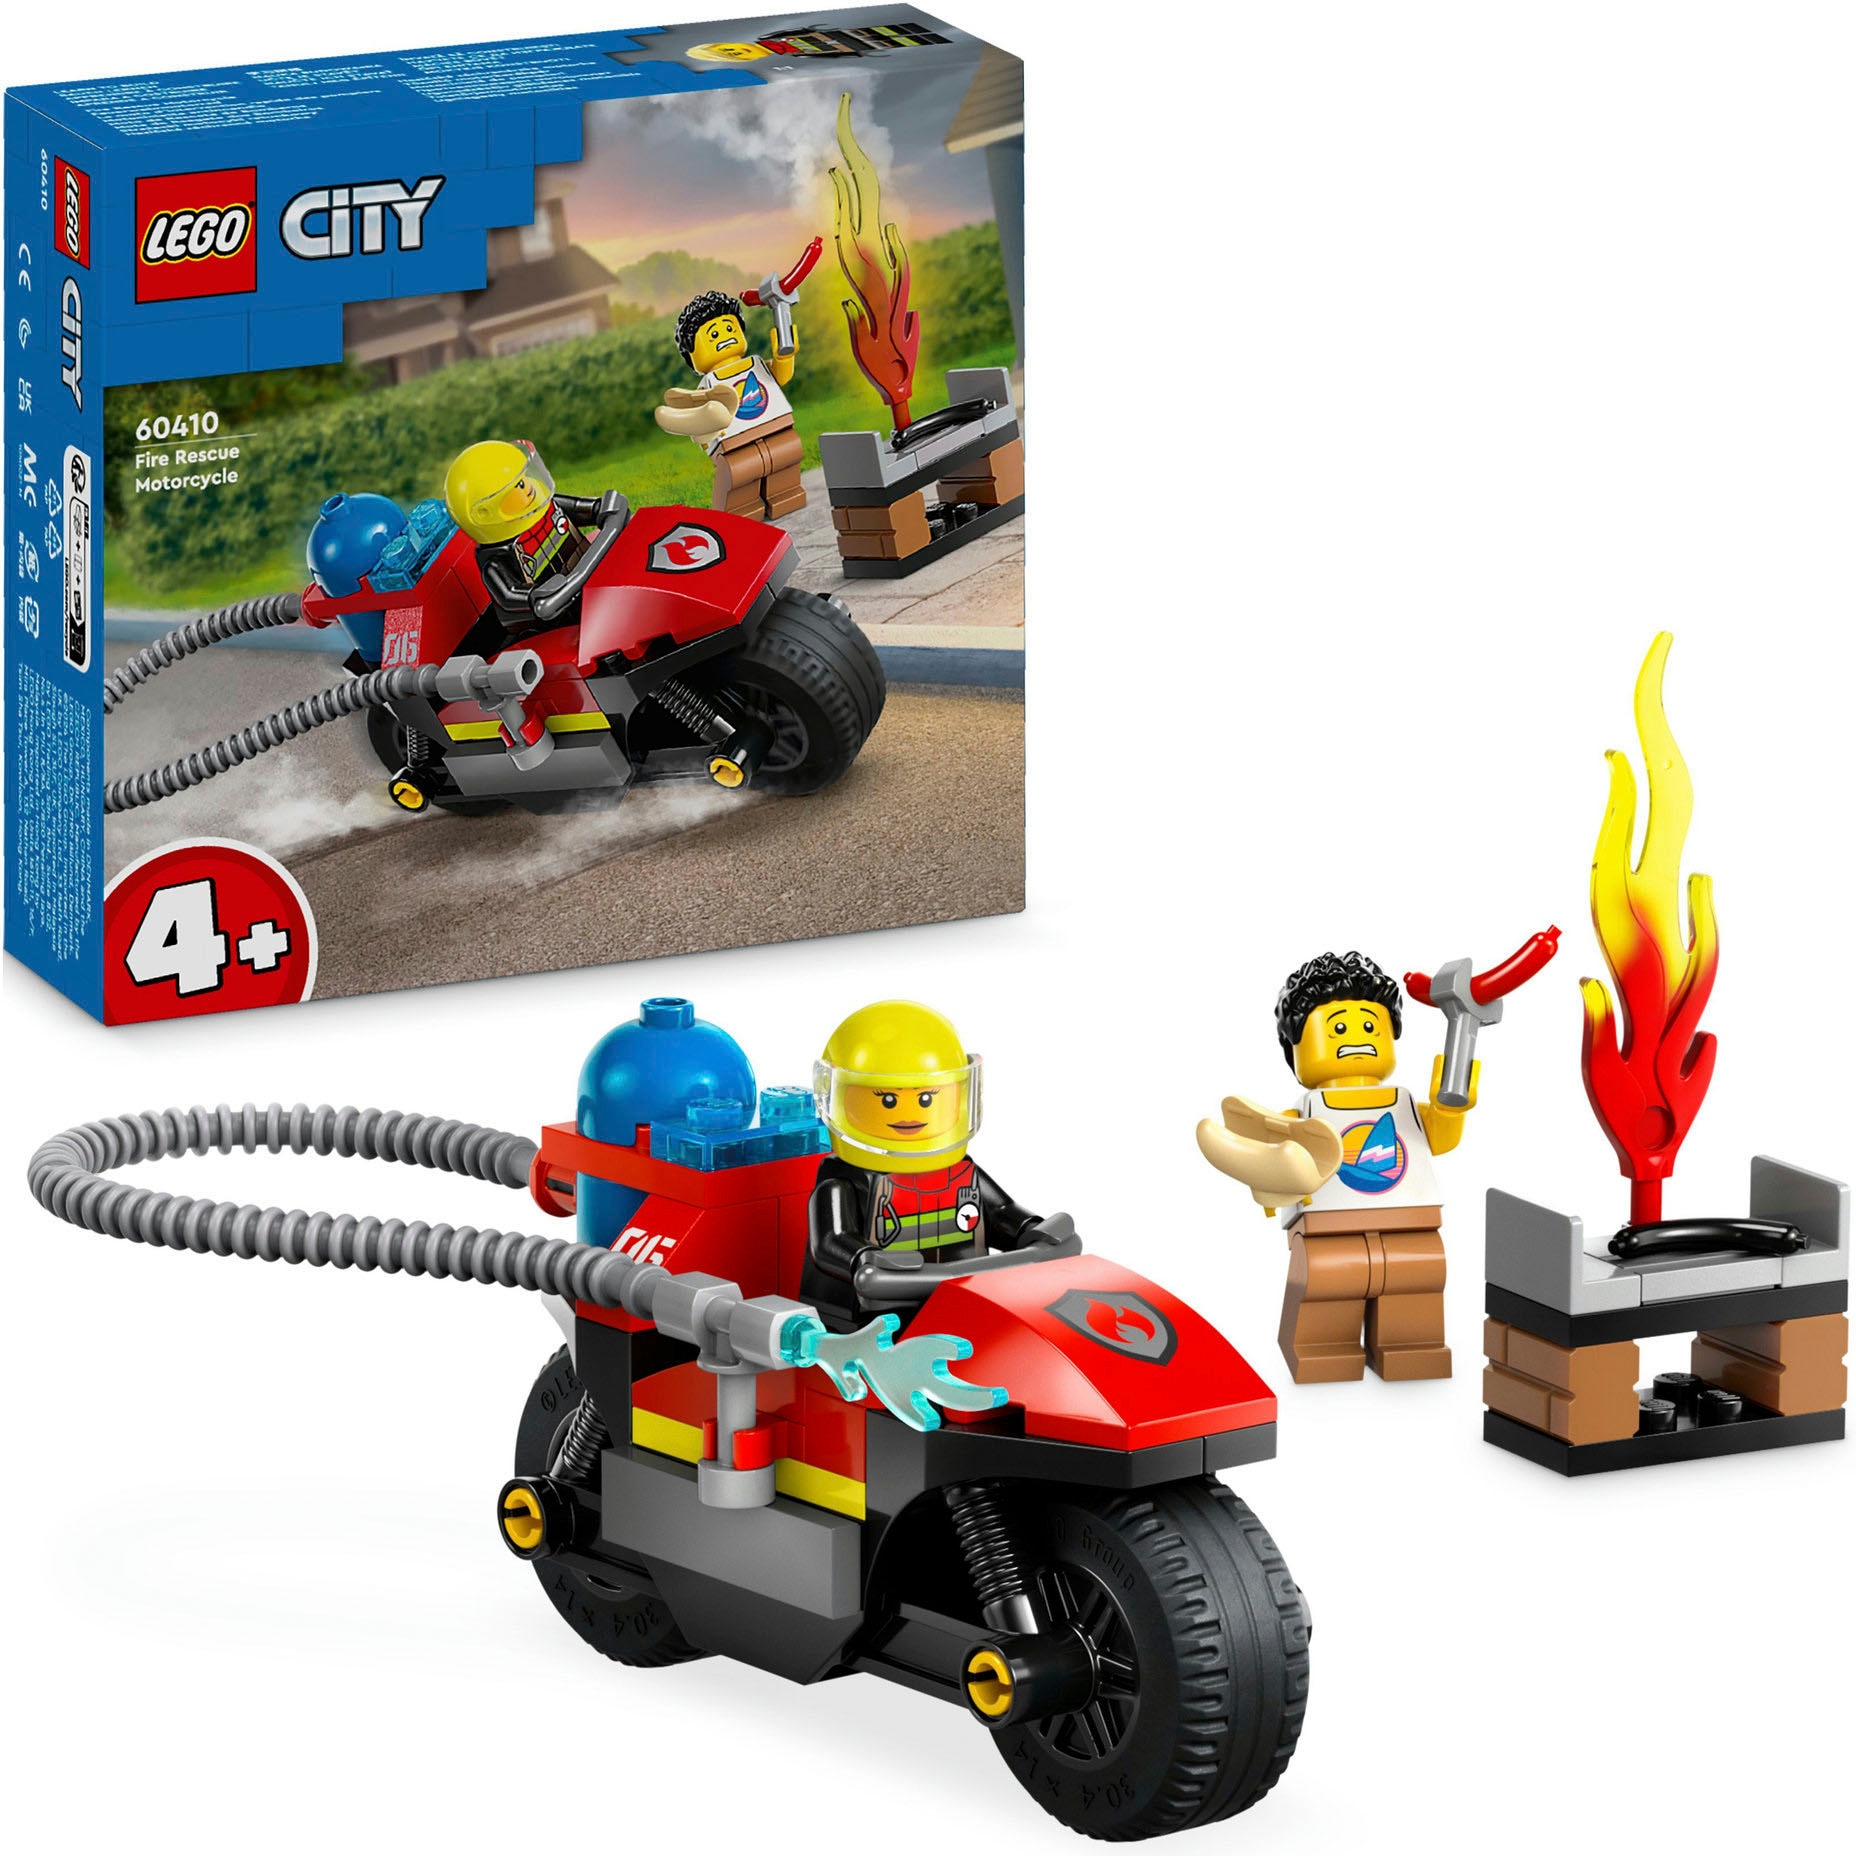 Konstruktionsspielsteine »Feuerwehrmotorrad (60410), LEGO City«, (57 St.), Made in Europe